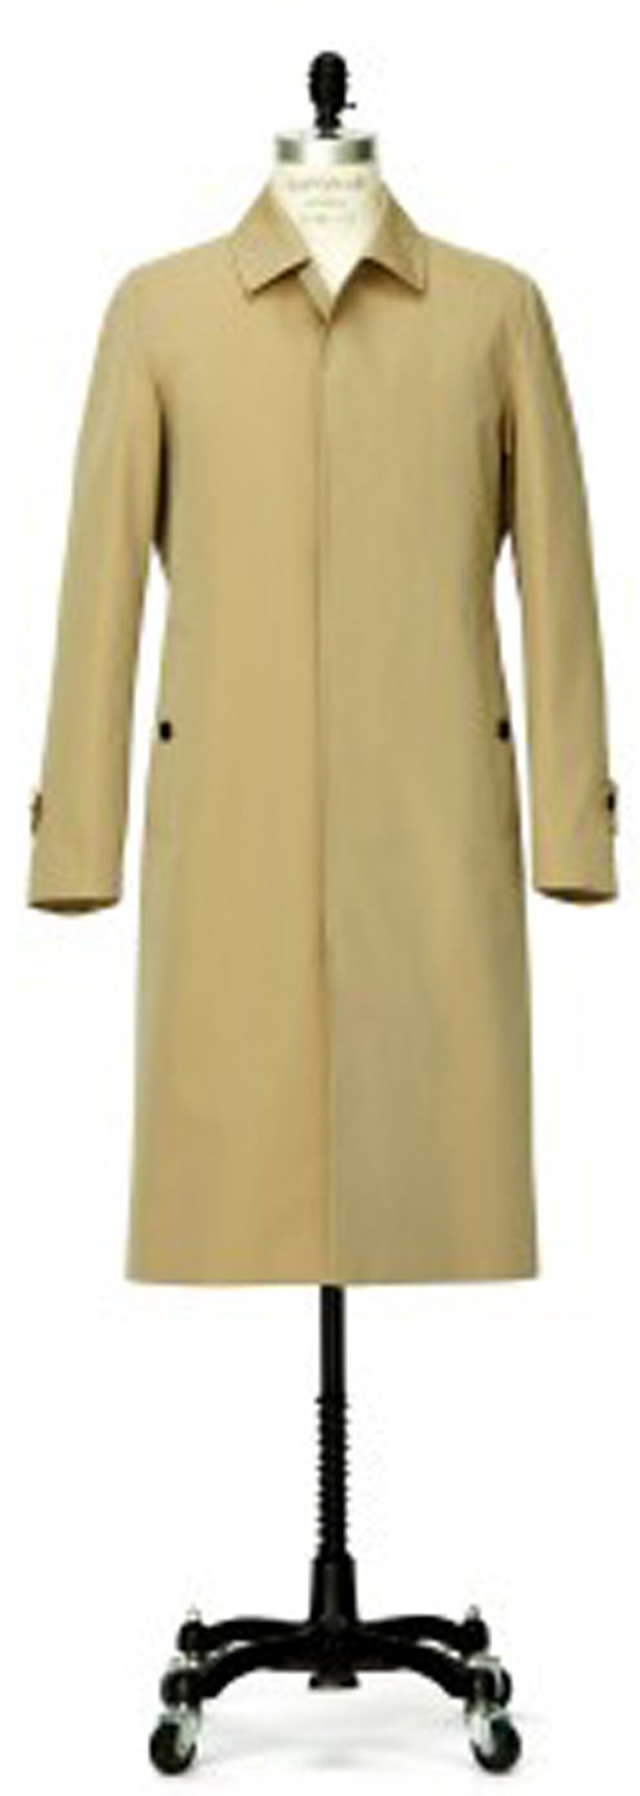 三陽商会の「100年コート」×歌舞伎の伝統衣装「翁格子」がコラボした「三陽格子」柄